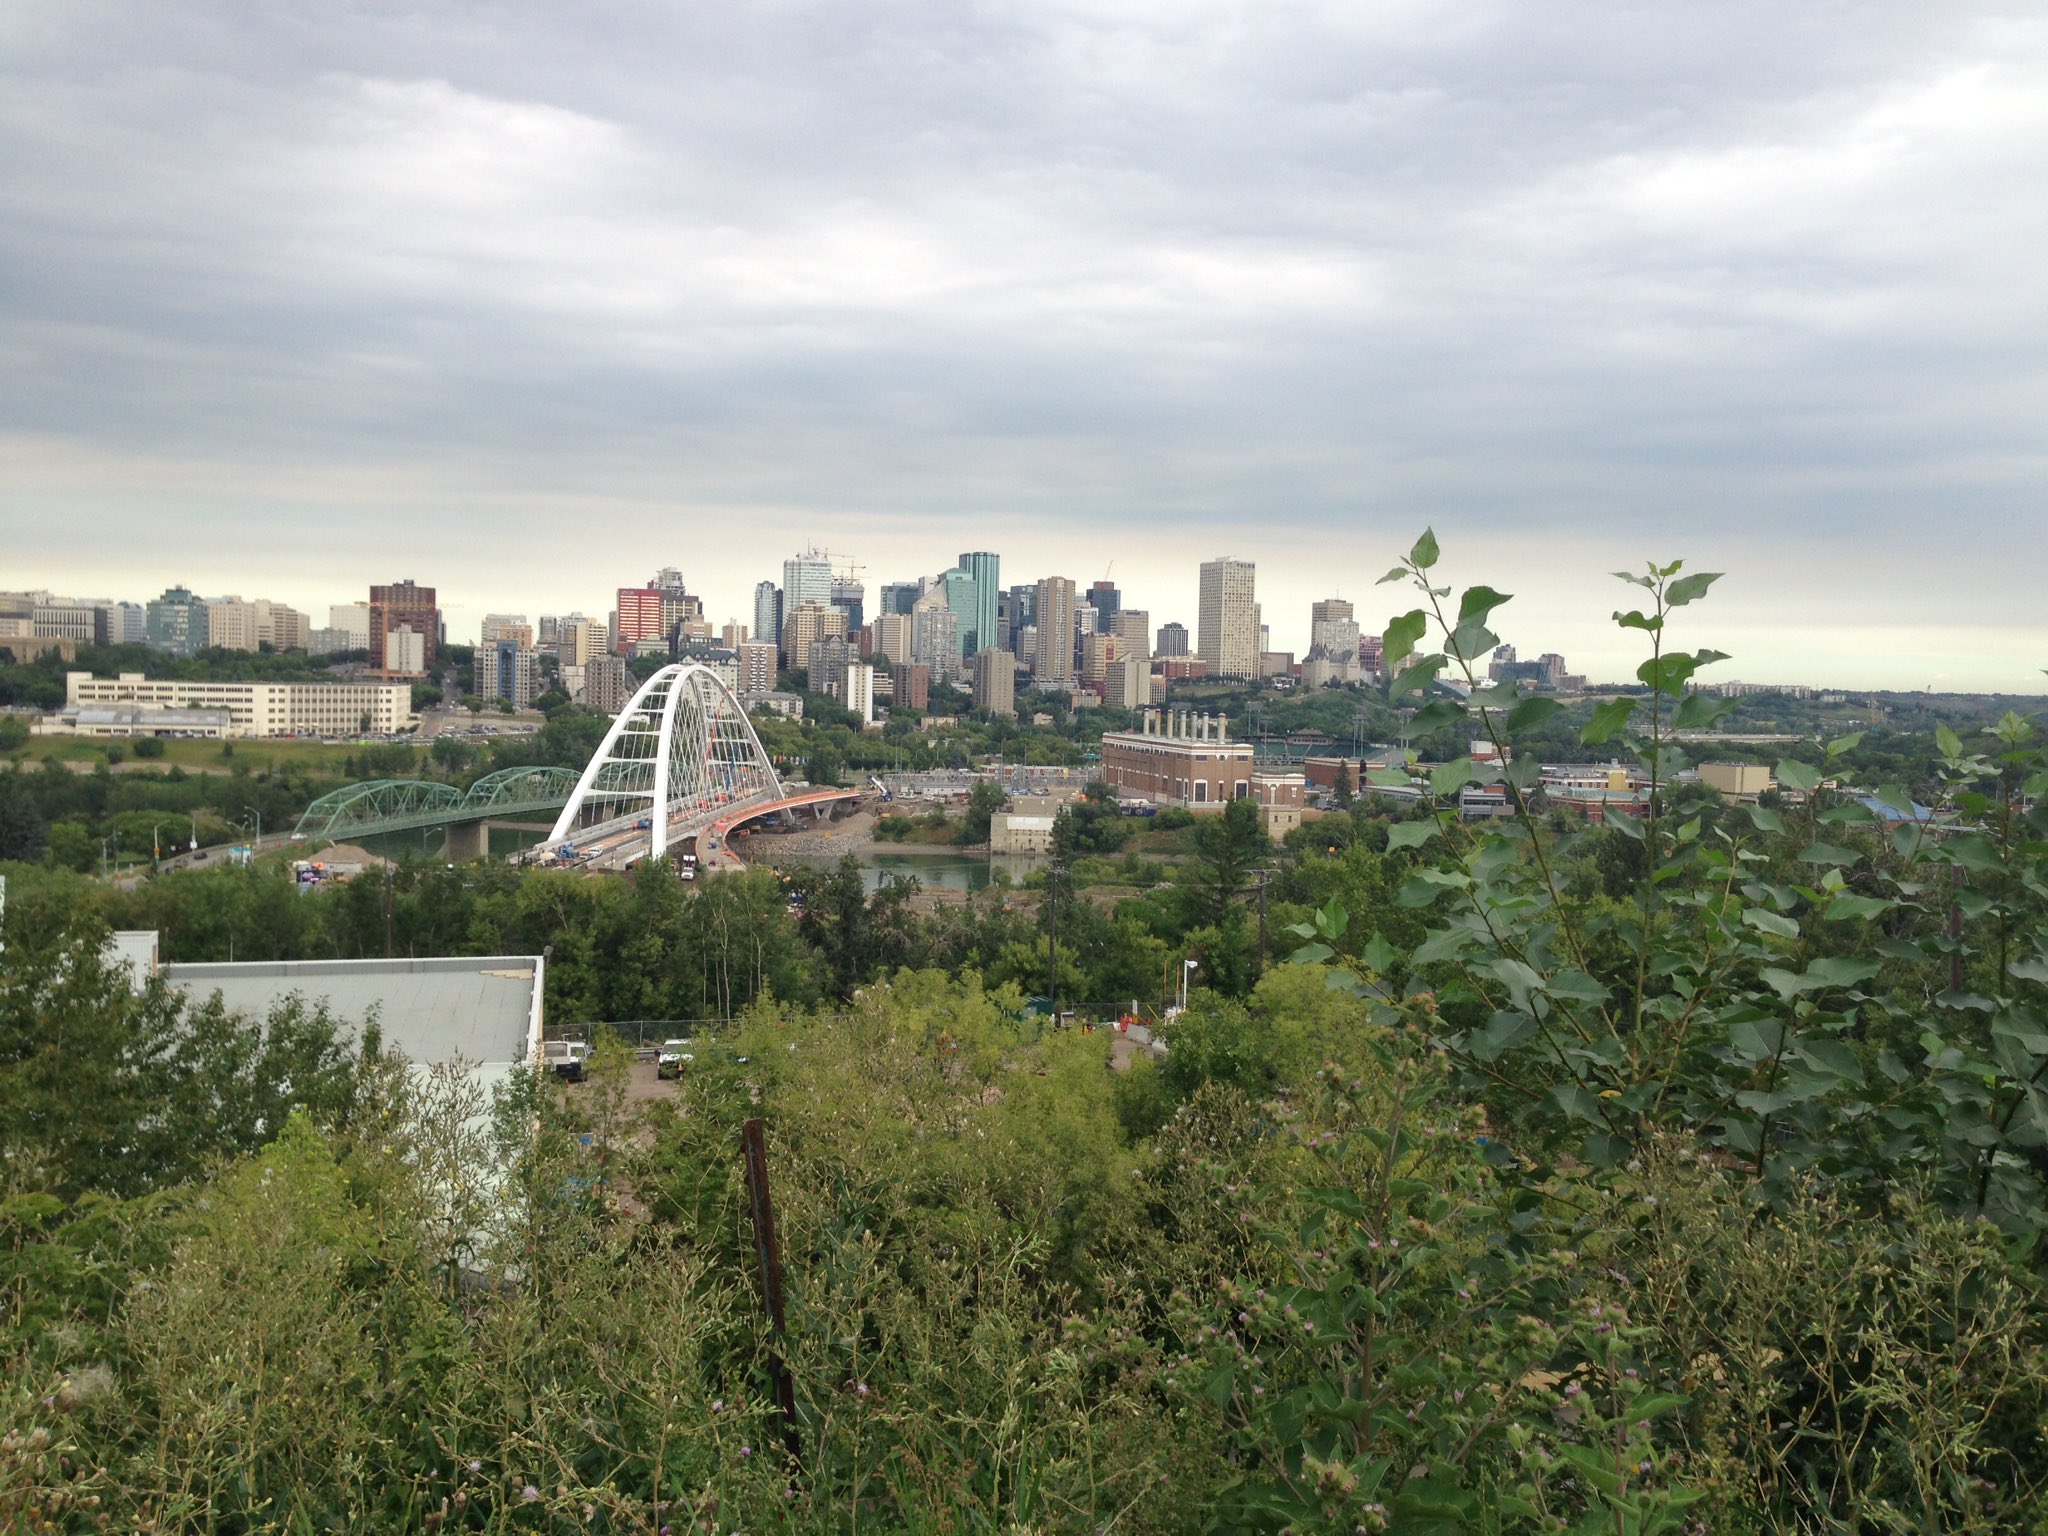 skyline van de stad Edmonton, vanaf Saskatchewan Drive op 31 juli 2017.